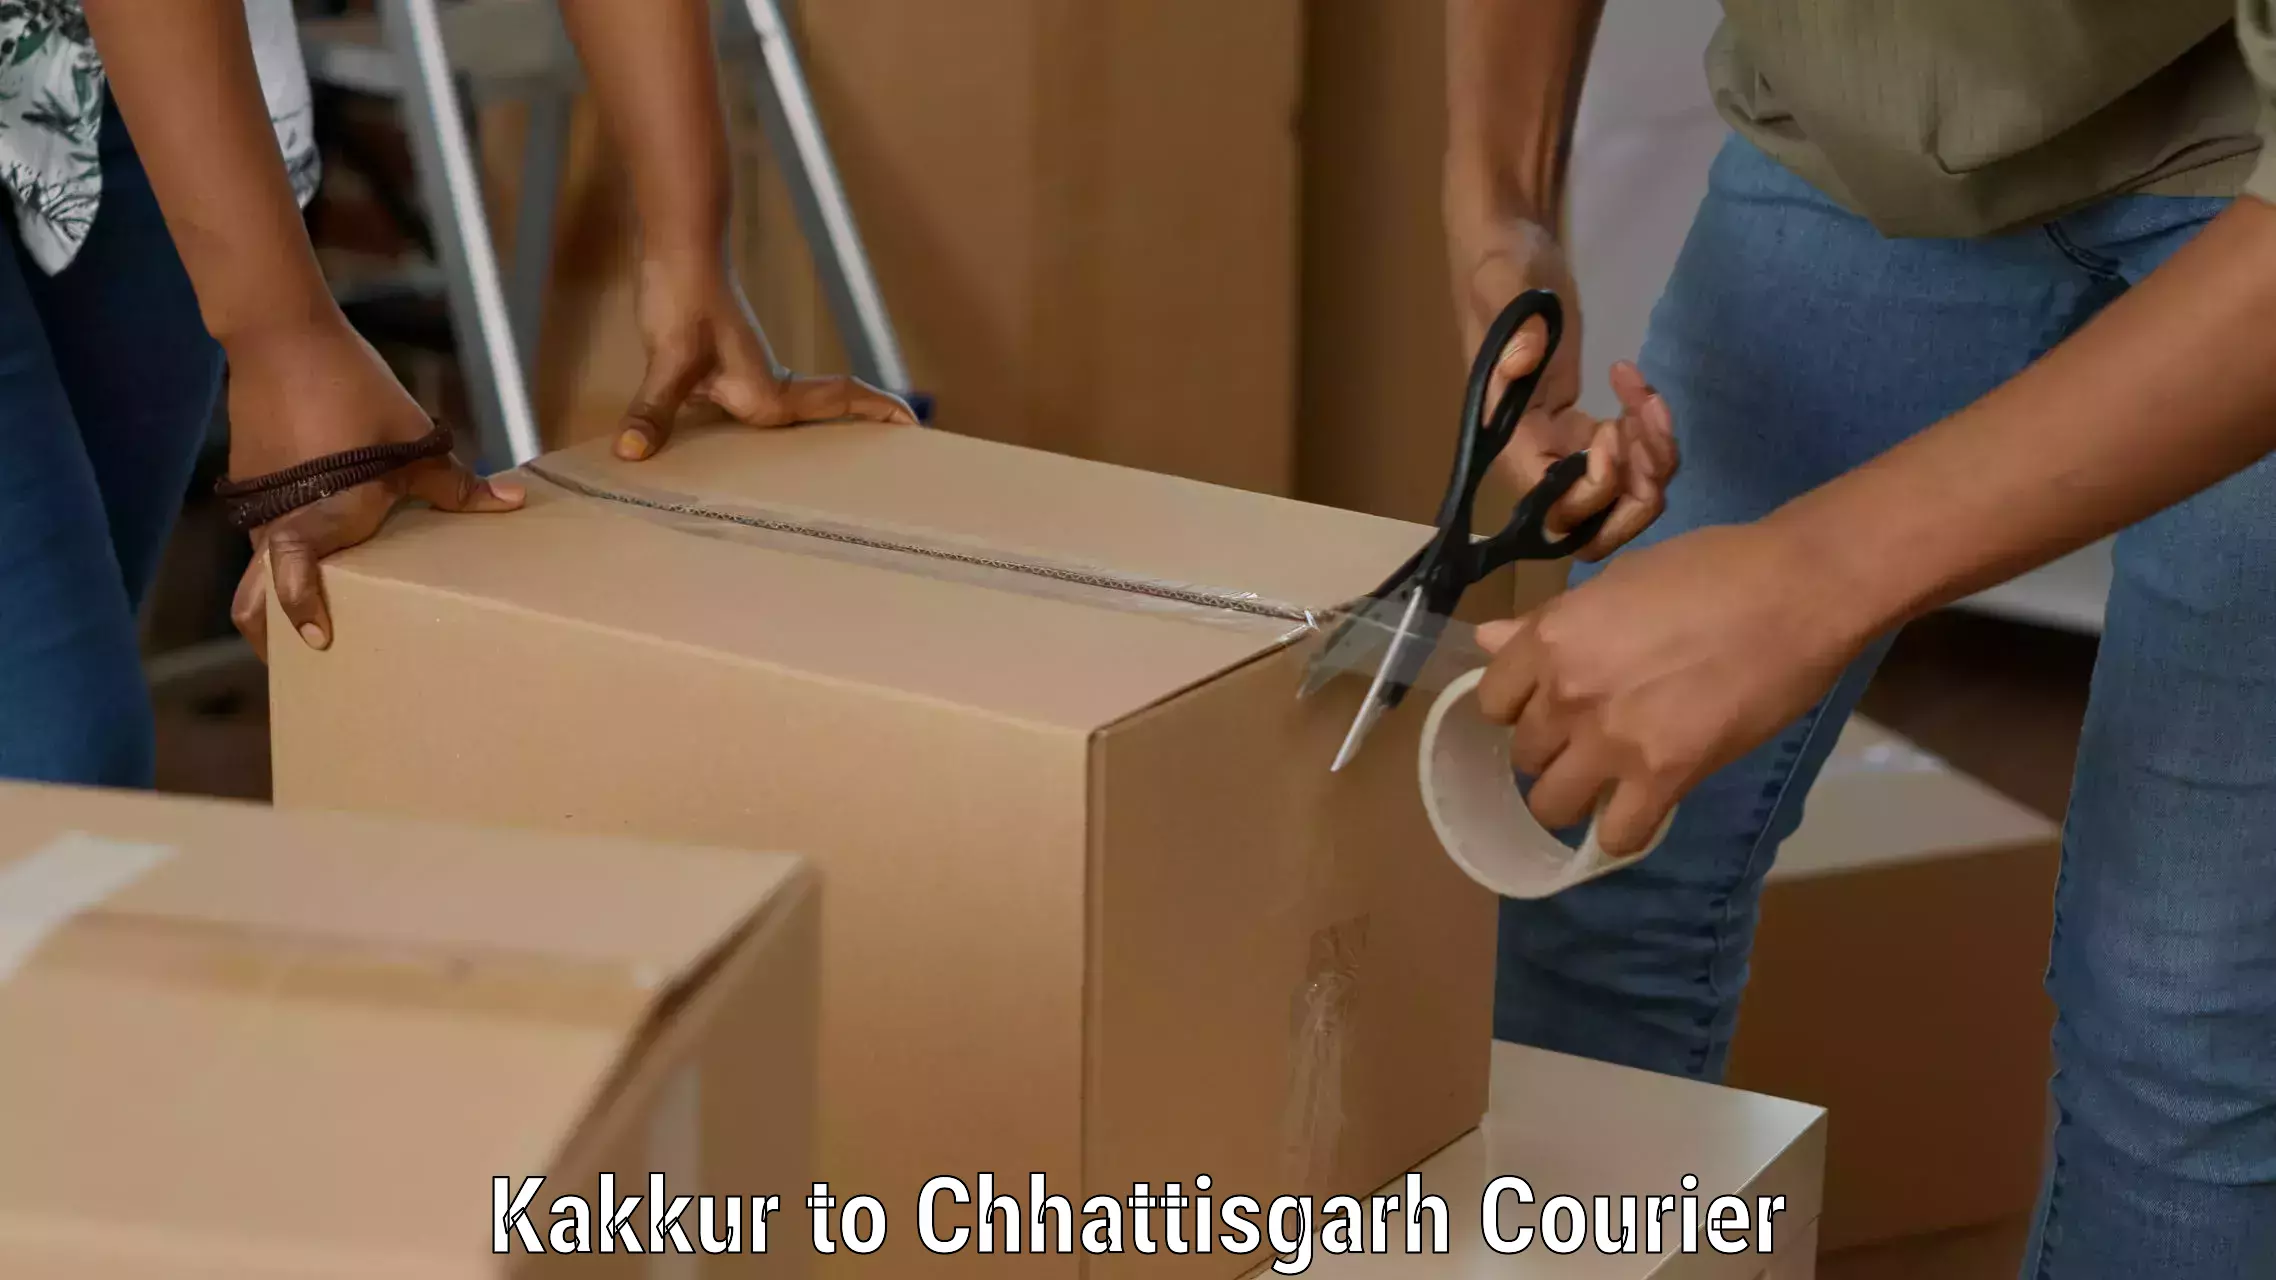 Cargo delivery service Kakkur to Baloda Bazar